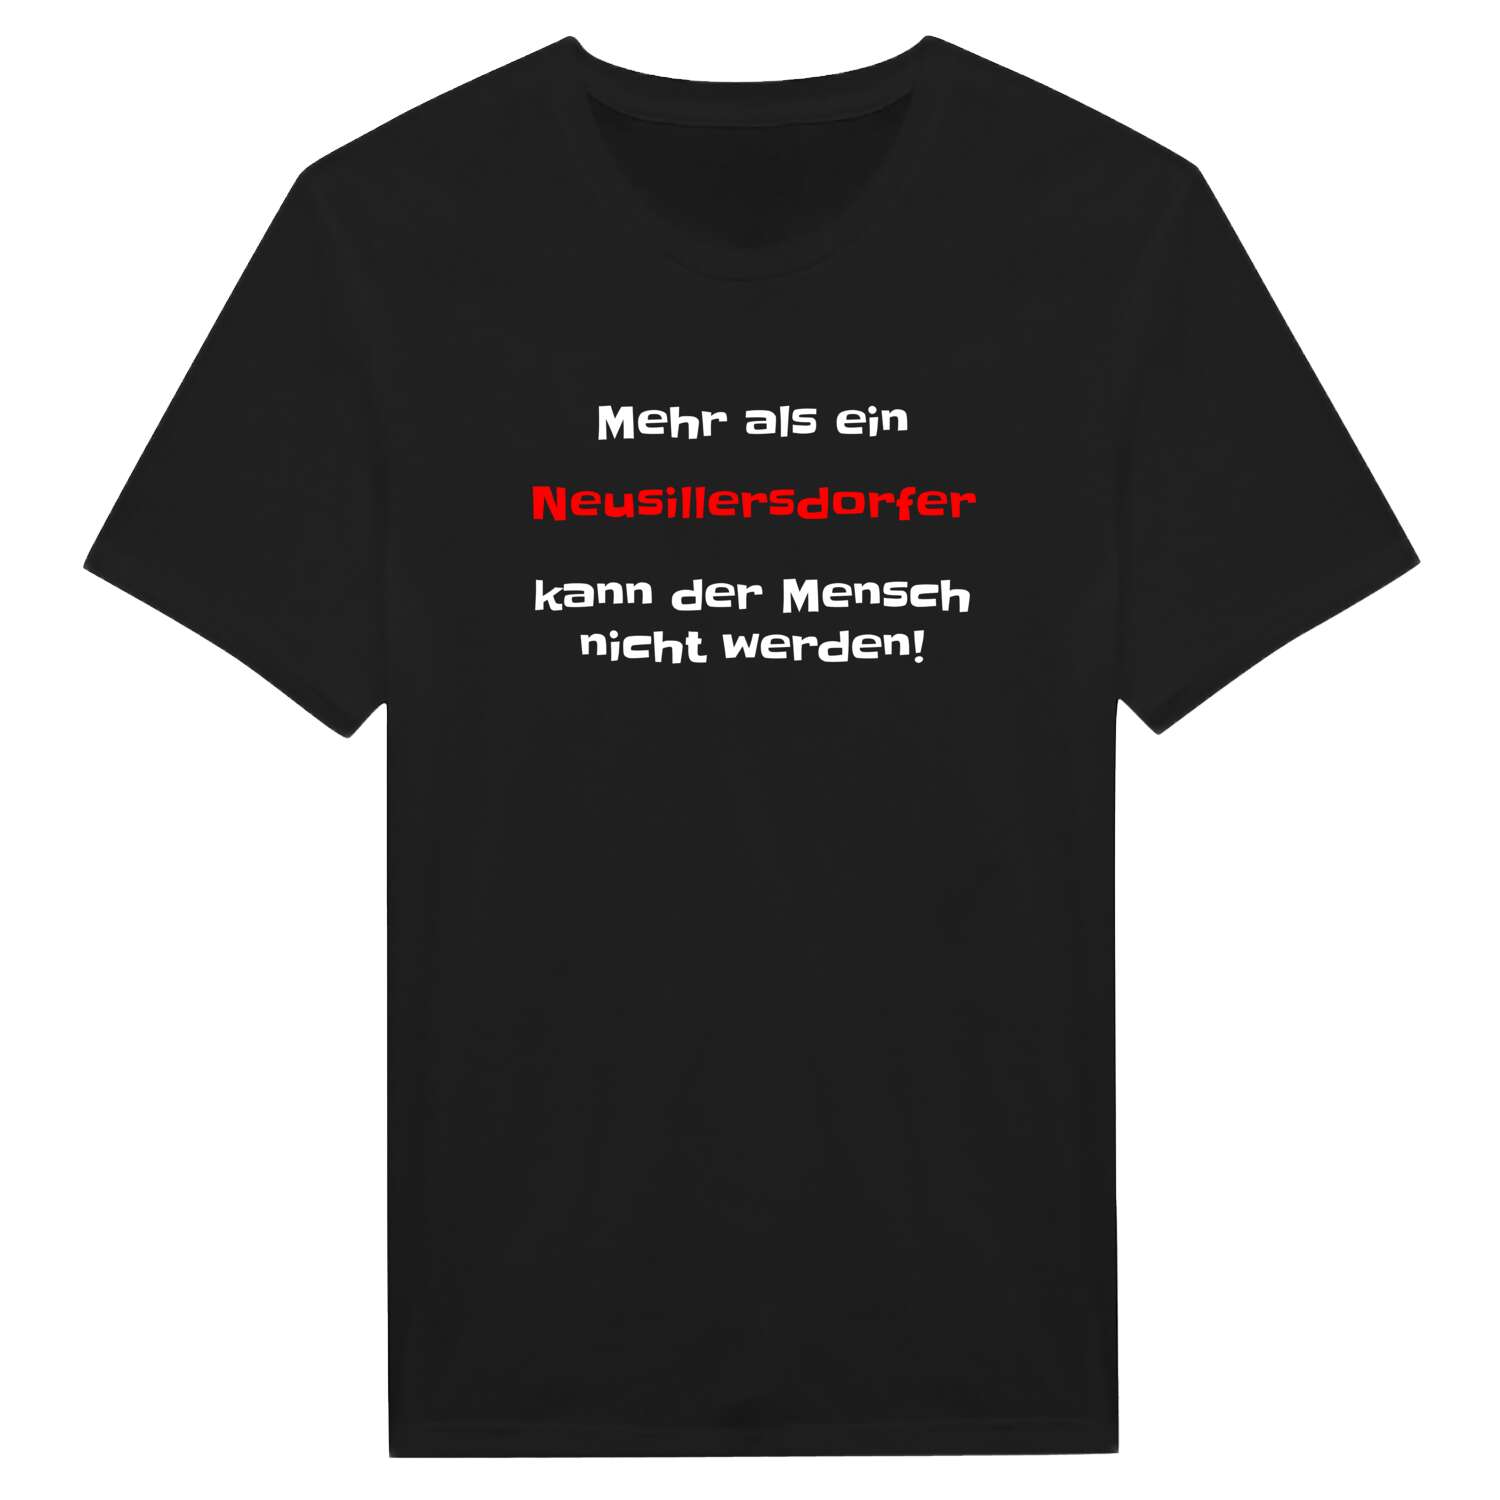 Neusillersdorf T-Shirt »Mehr als ein«